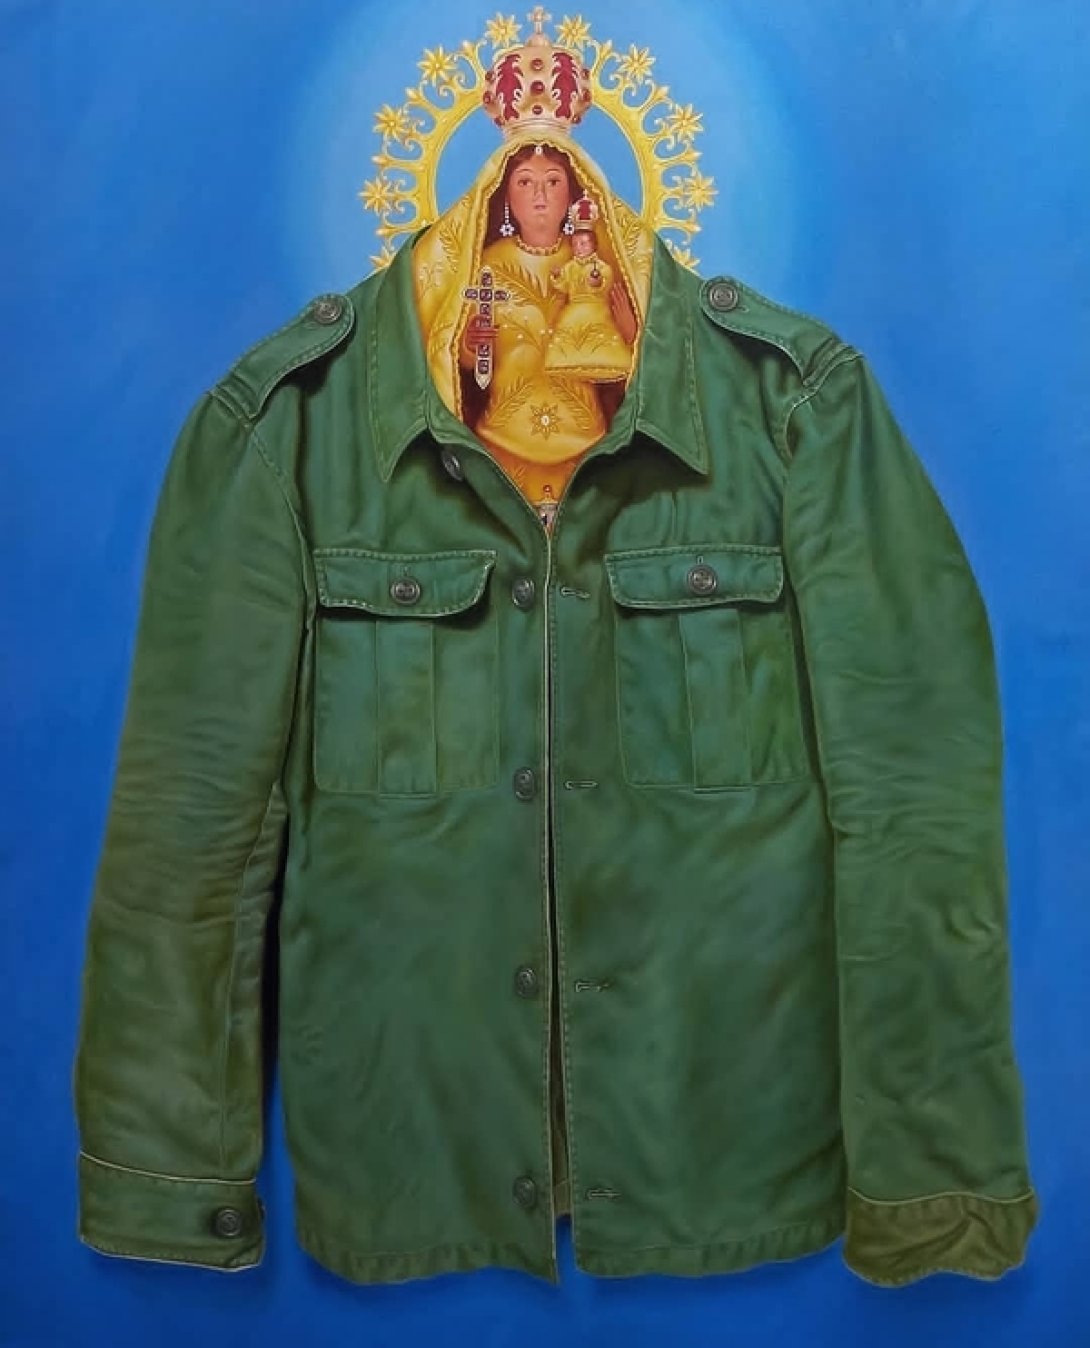 Estatuilla de la Virgen de la Caridad dentro de un traje verde militar.